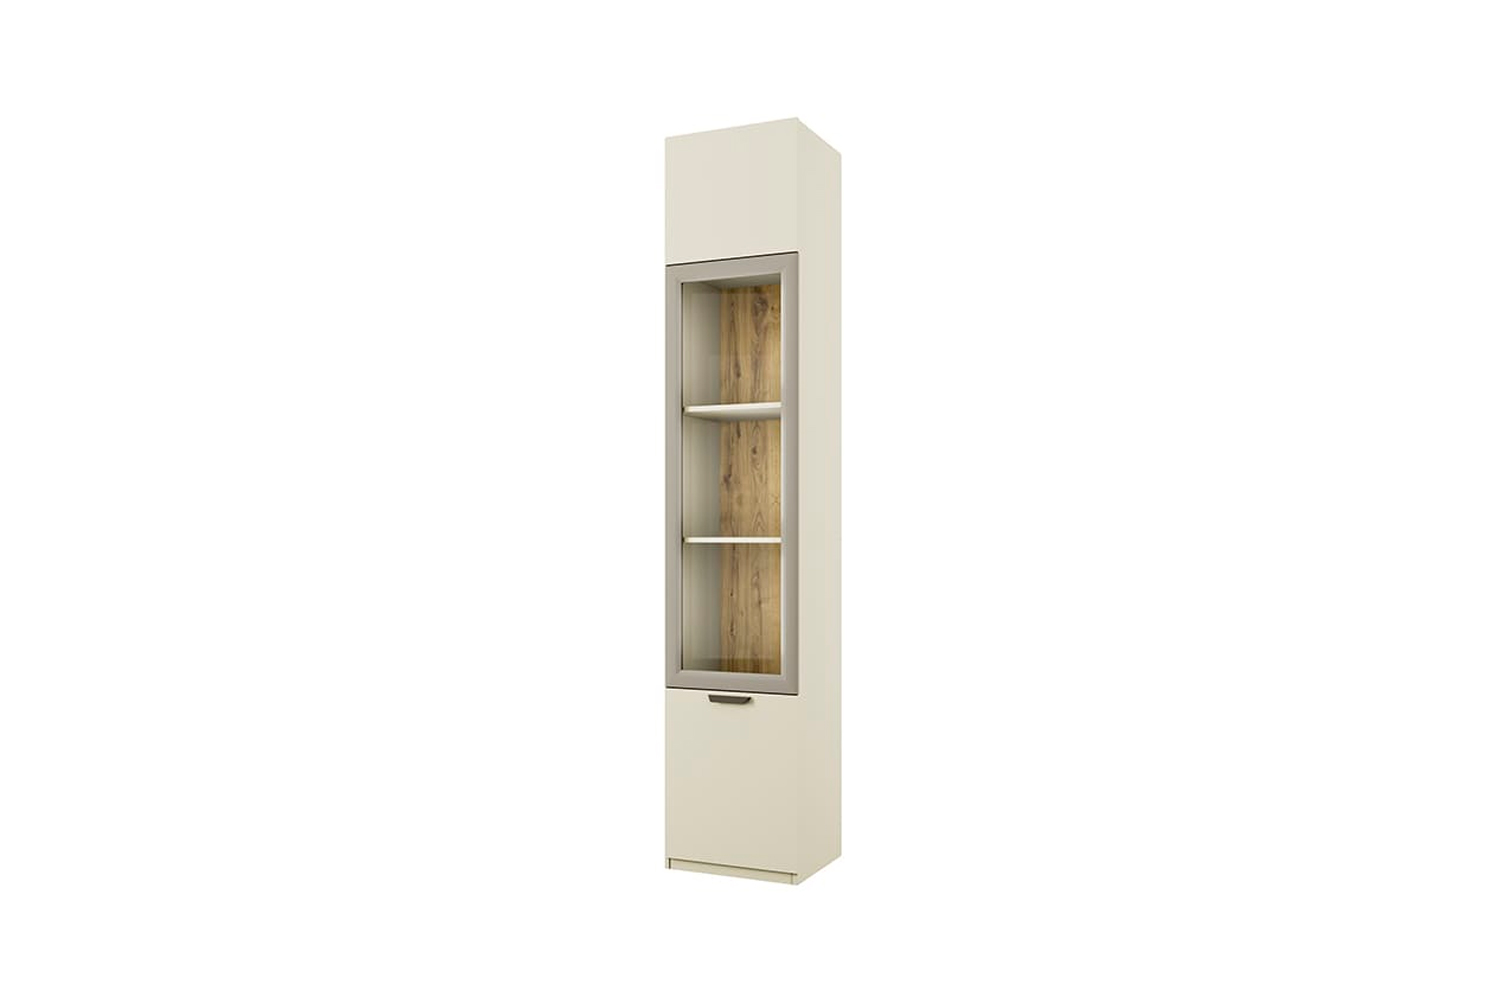 фото Anrex modern, шкаф с витриной 1v2d. цвет перс жемчуг/ирл ликер